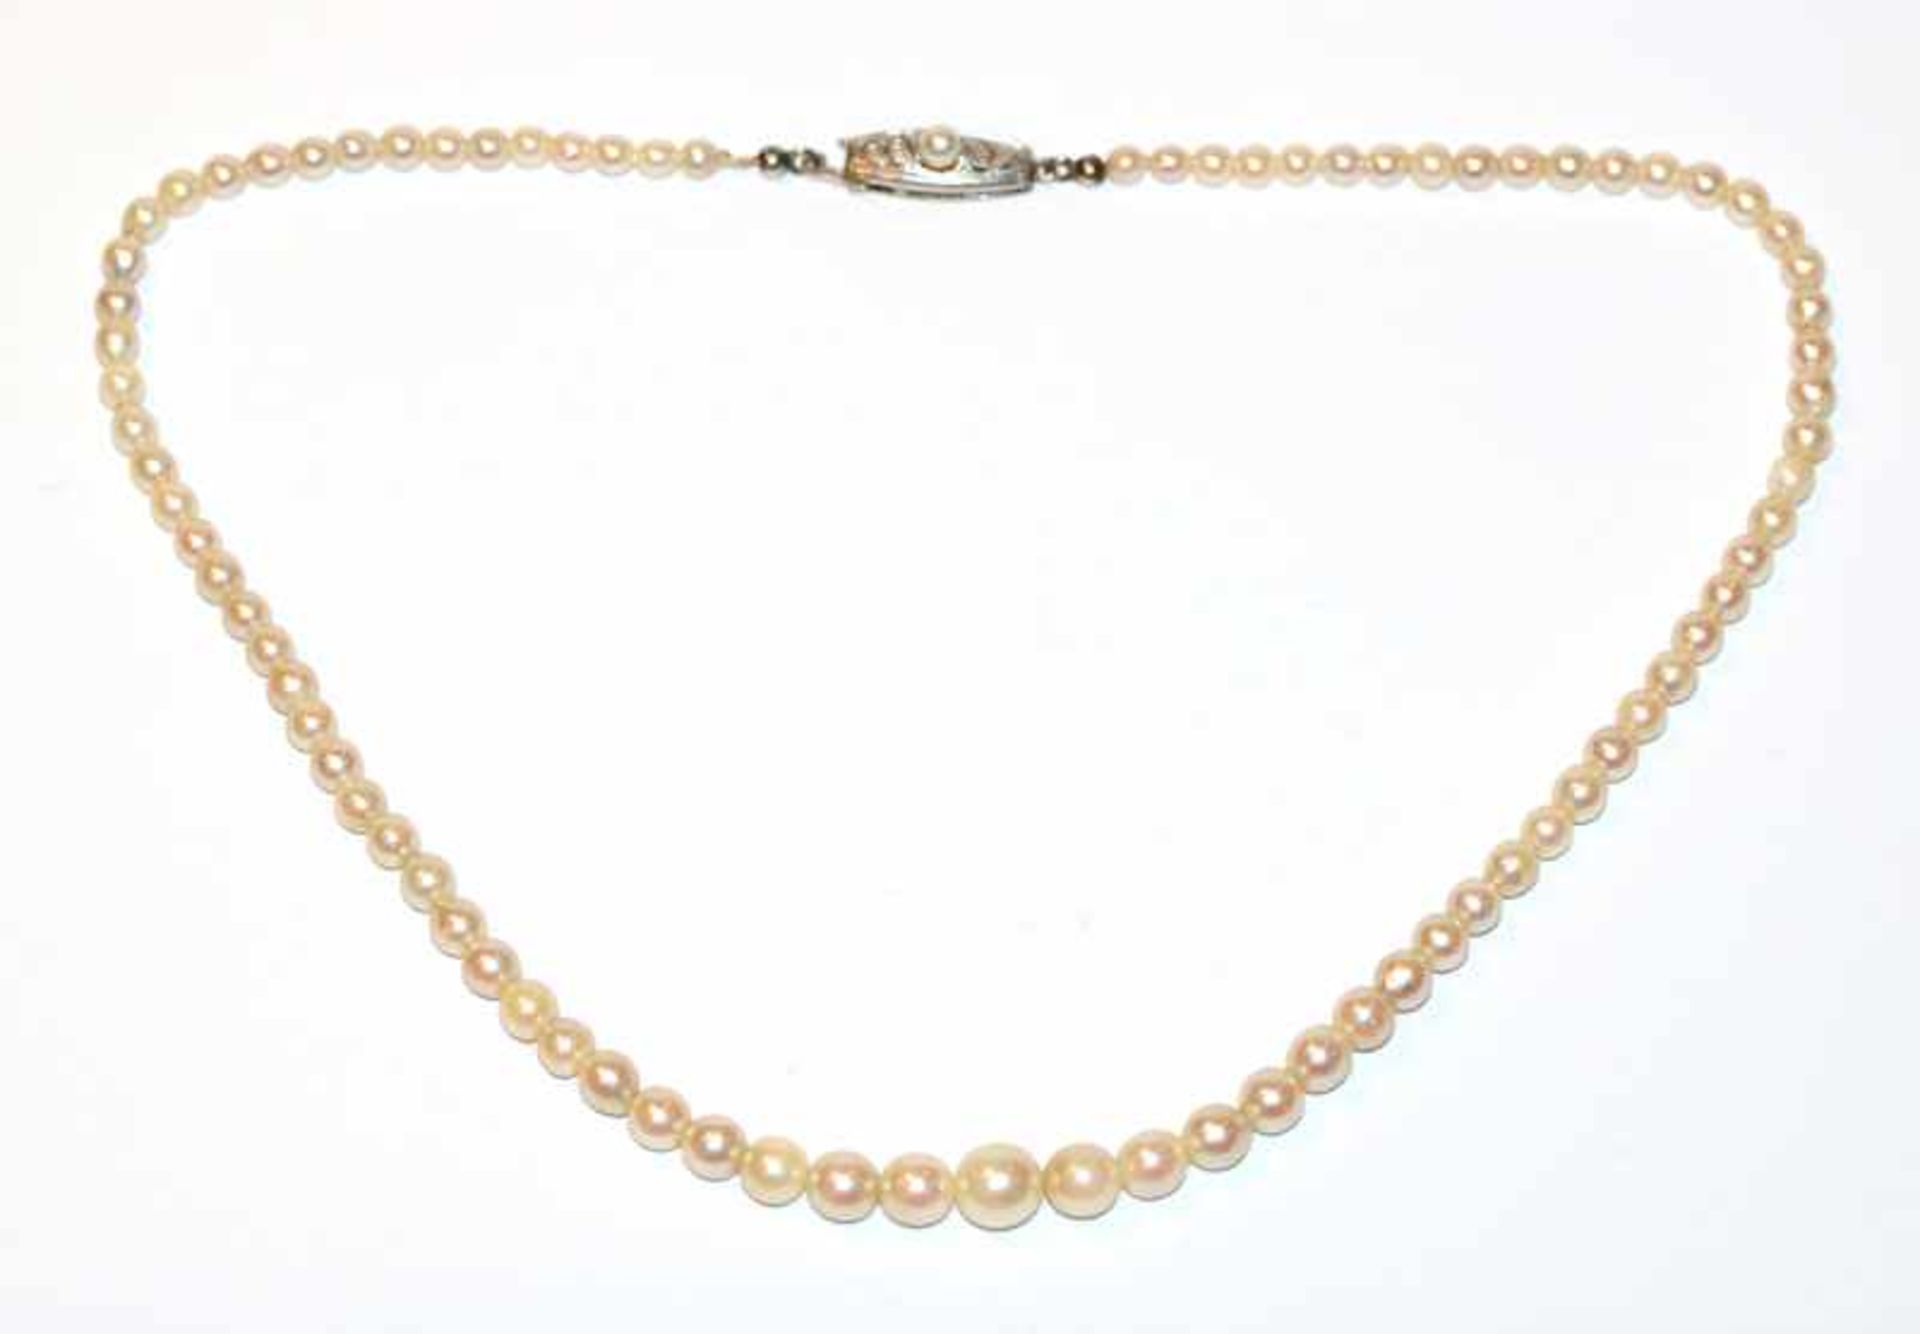 Opern-Perlenkette in Verlaufform, 8 k Weißgold/Silber Schließe, um 1920, L 38 cm, leichte